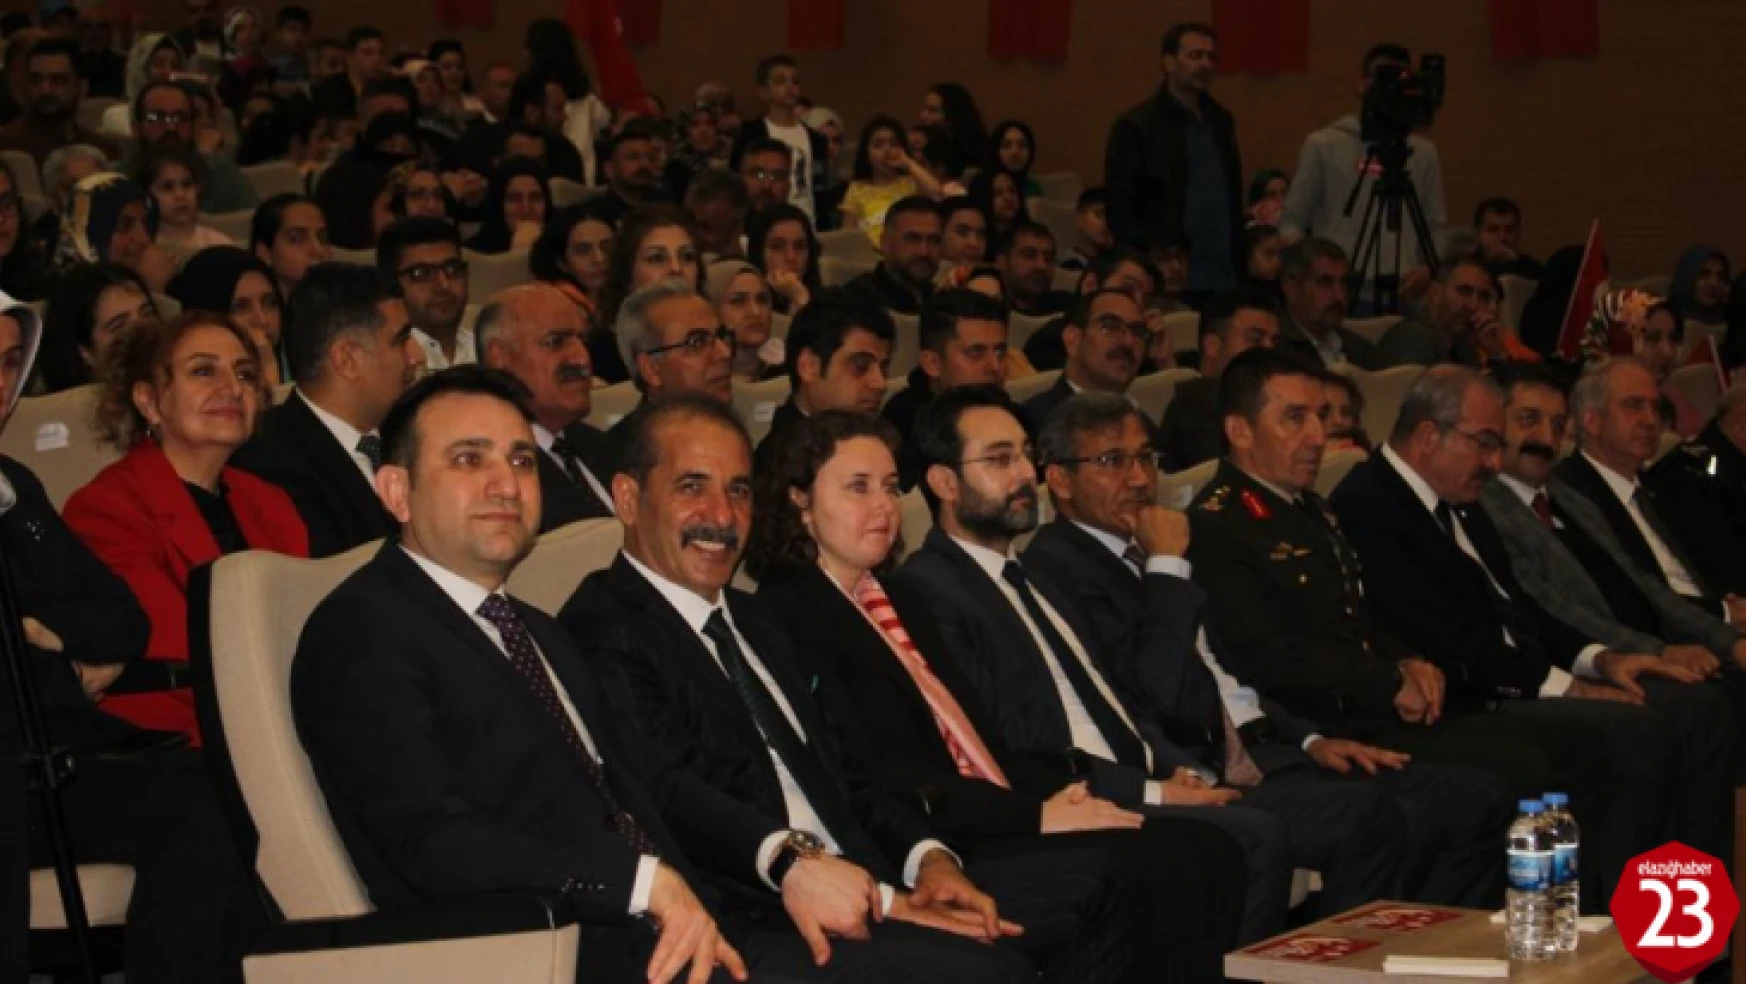 Bağımsız Aday Prof.Dr. Bilal Çoban, Mecliste Elazığ Diyeceğiz, Salonlarda Elazığlıları Söyleyeceğiz